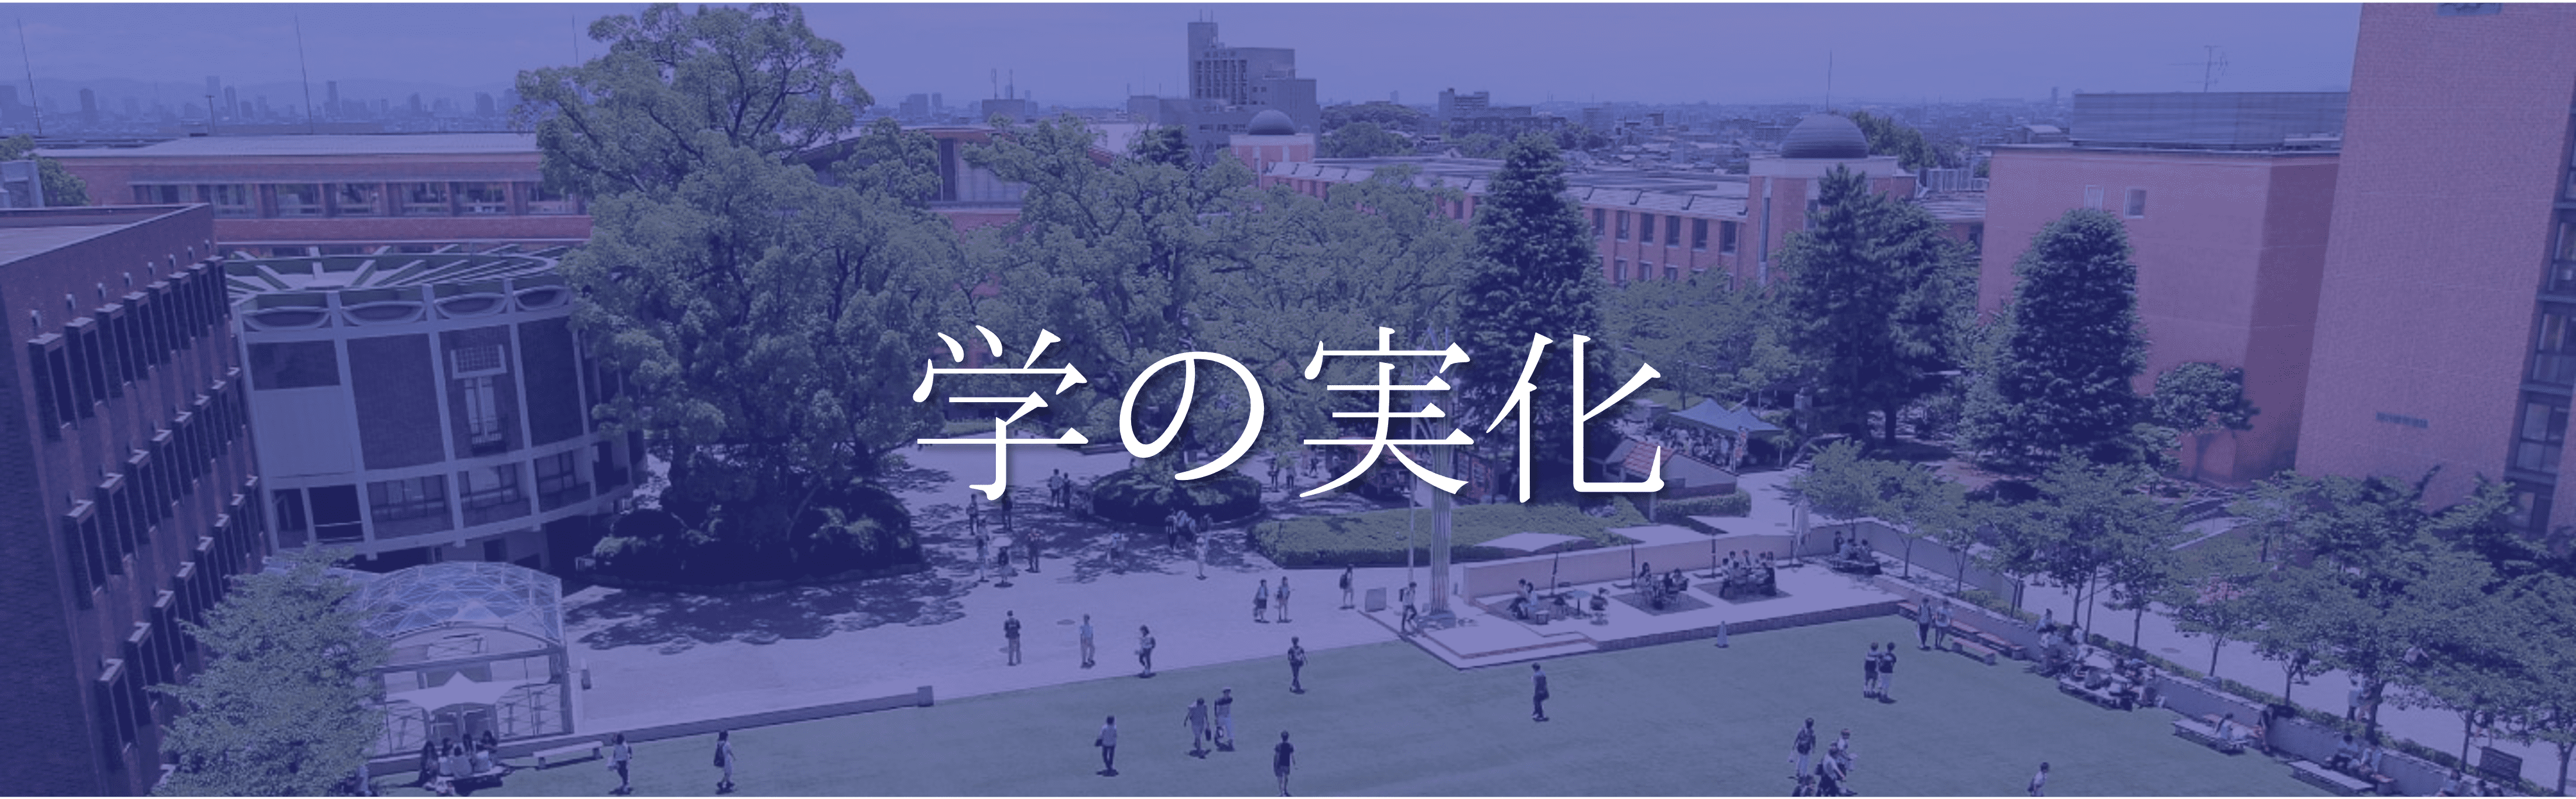 関西大学 モットー